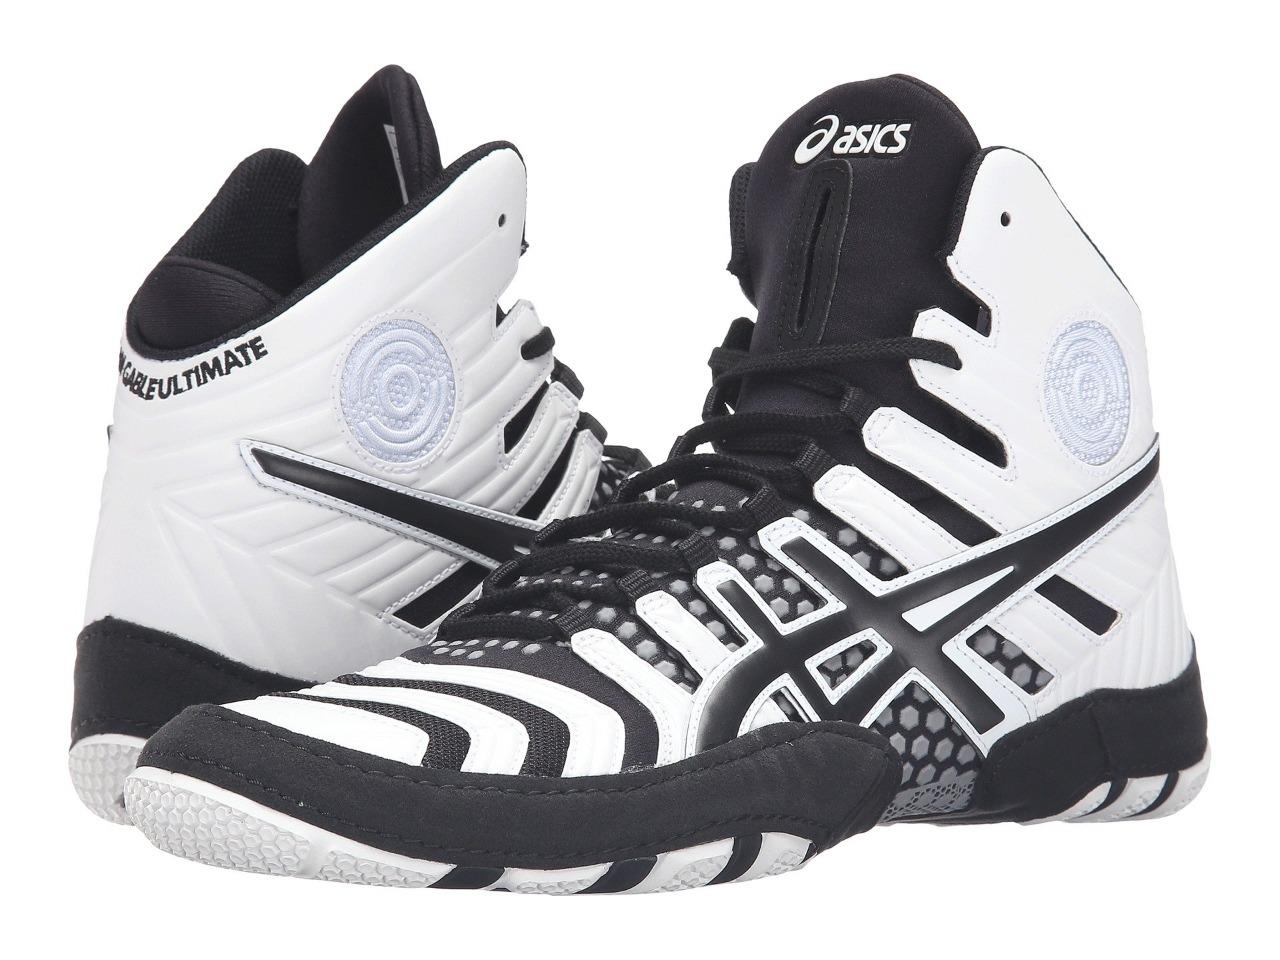 New Men's Asics Dan Gable Ultimate 4 Wrestling Shoes Size 8-15 White  J500Y-0190 | eBay